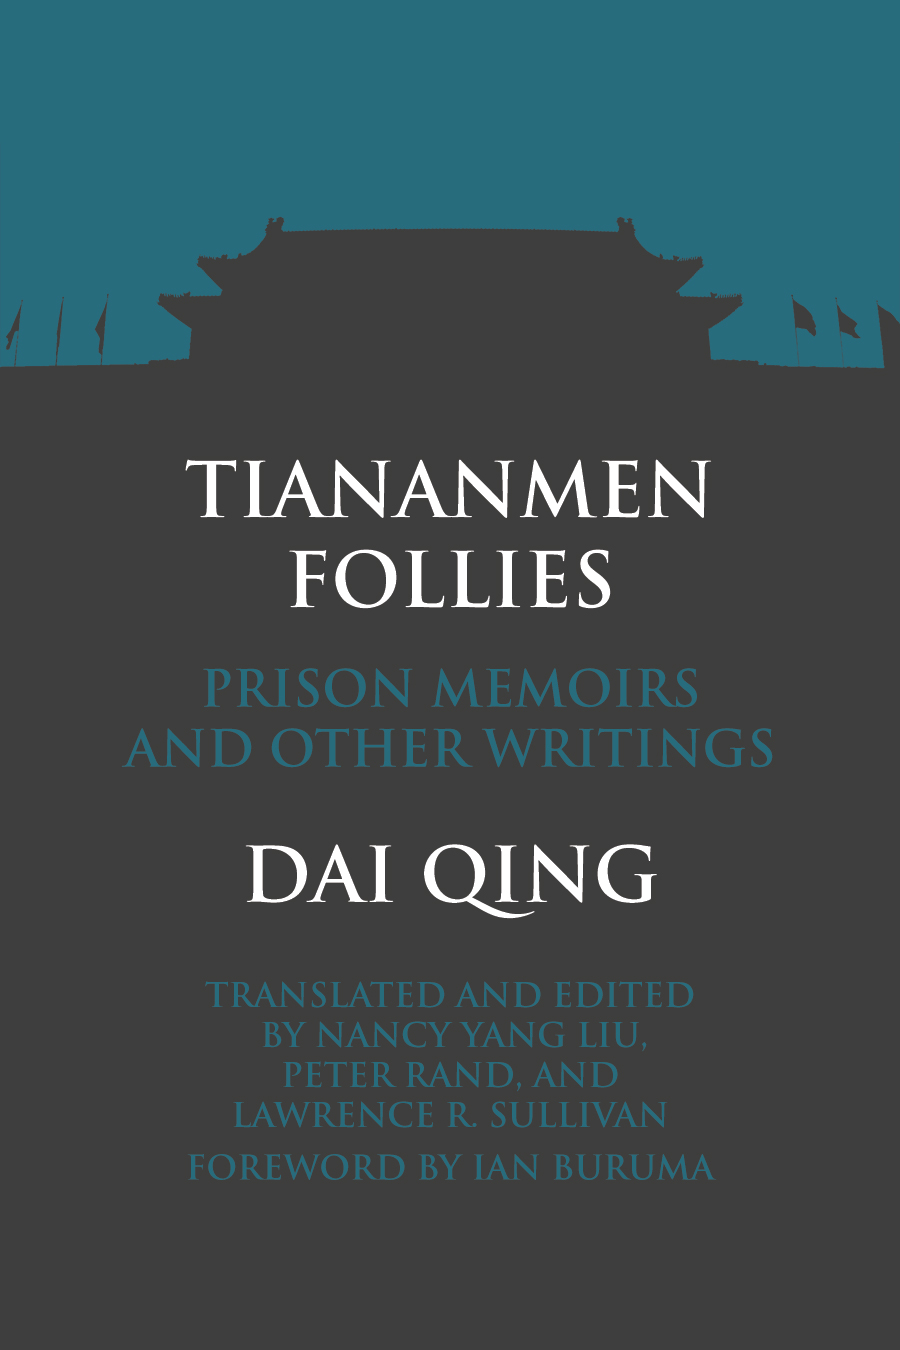 Cover of Tiananmen Follies, by Dai Qing